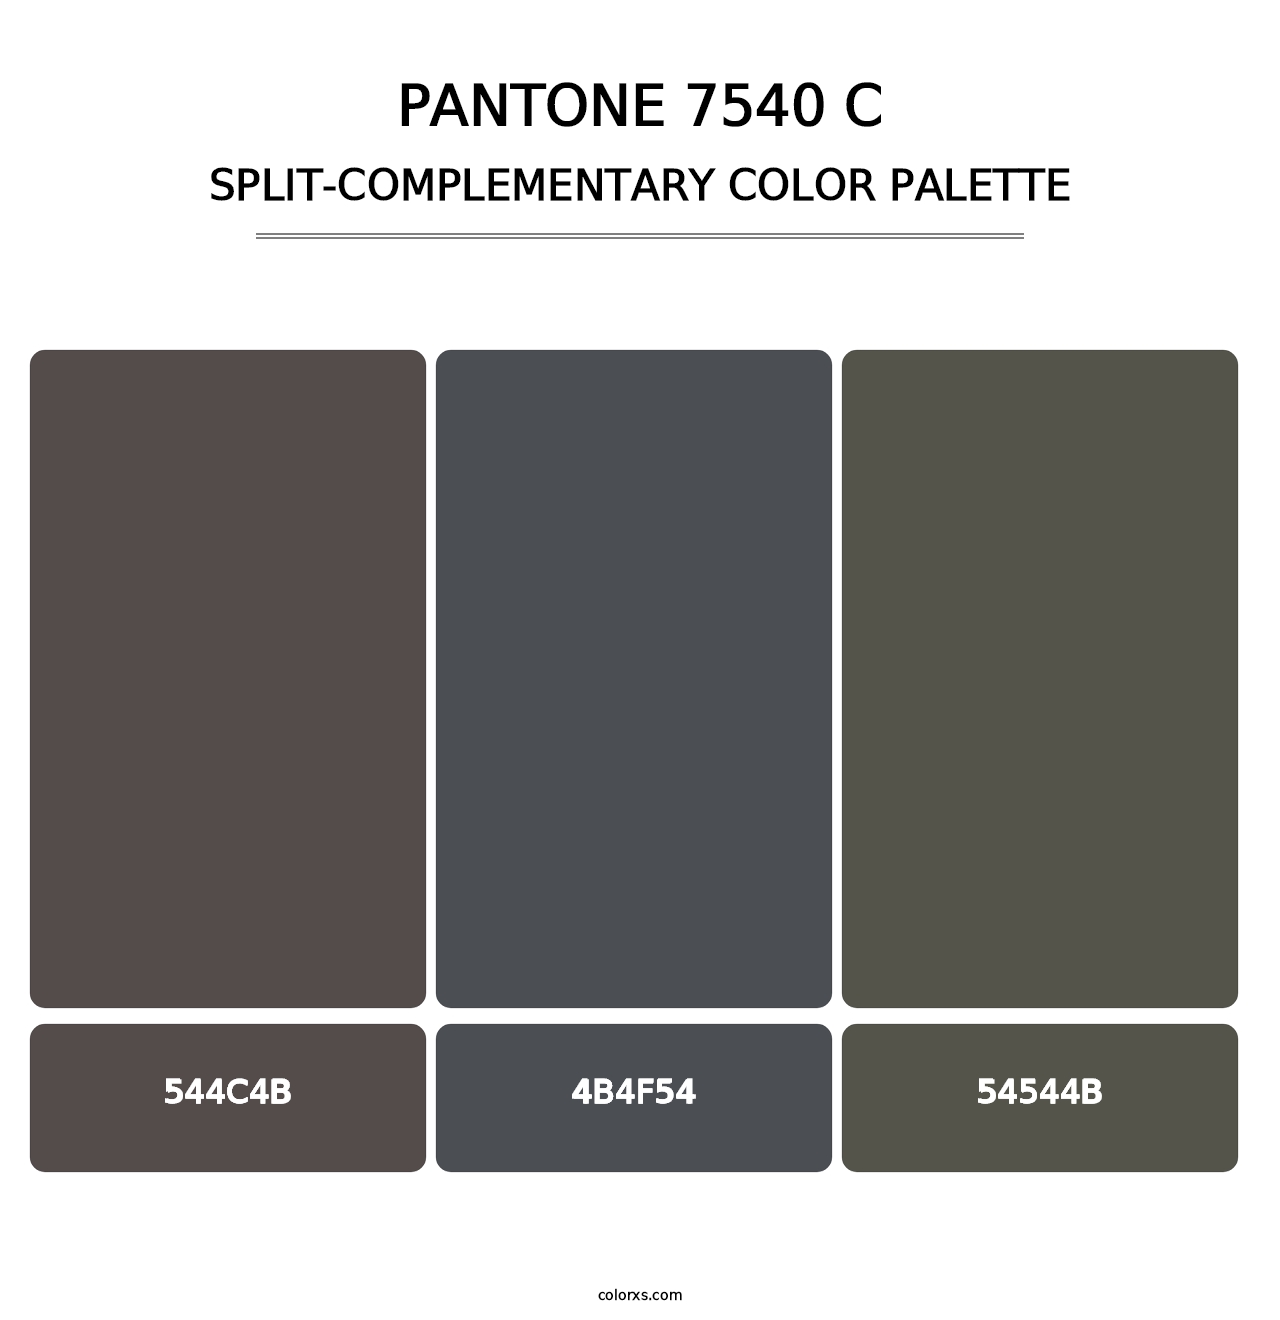 PANTONE 7540 C - Split-Complementary Color Palette